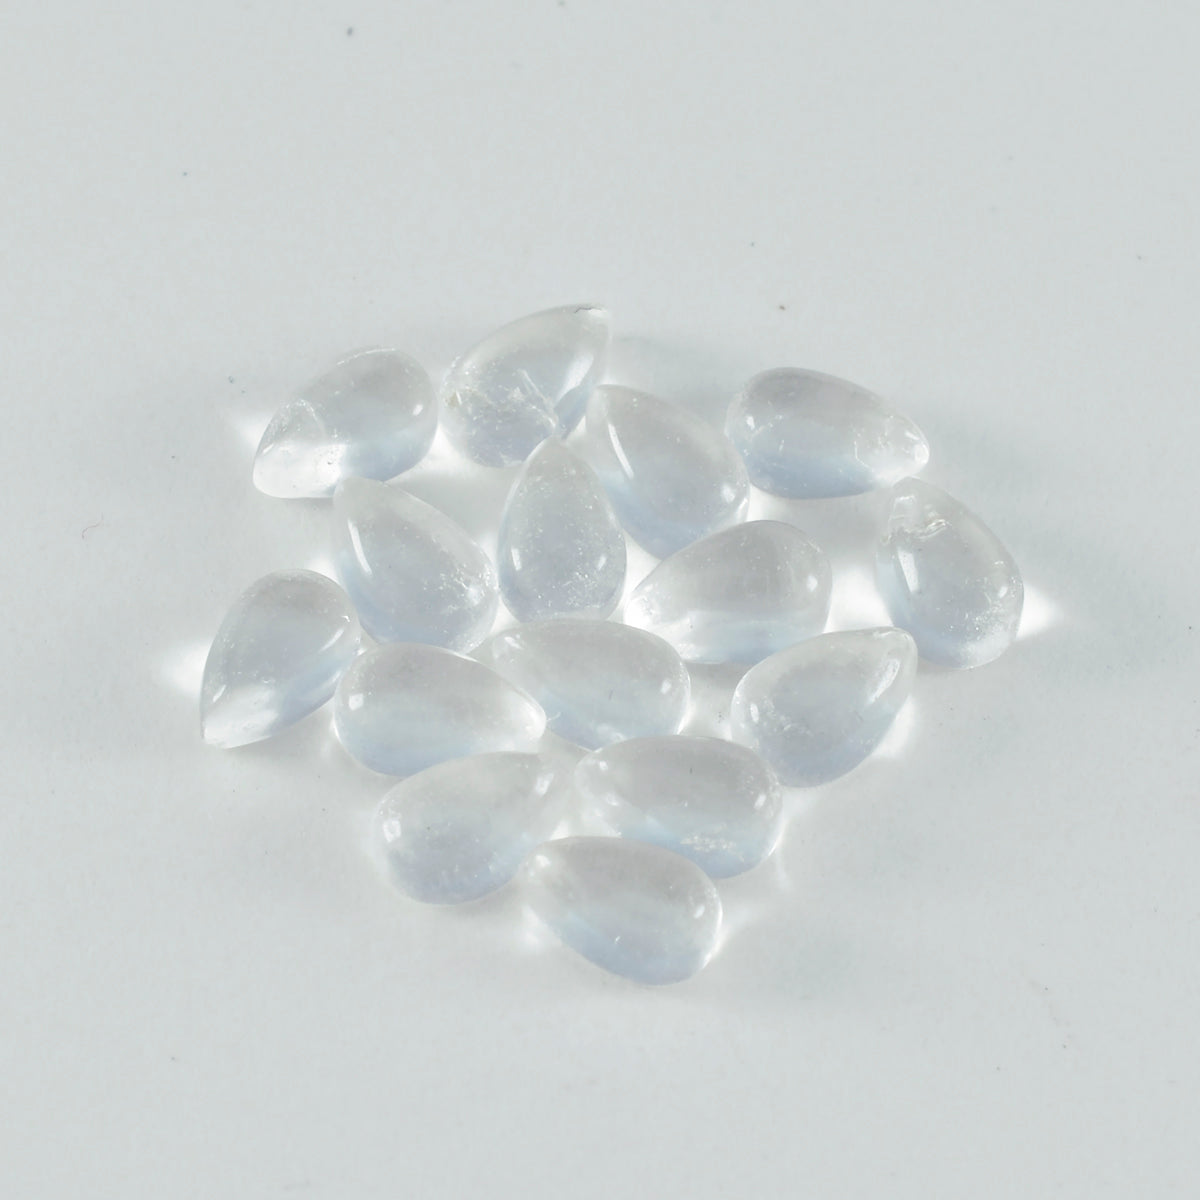 riyogems 1 шт. белый кристалл кварца кабошон 4x6 мм грушевидной формы сладкий качественный свободный камень